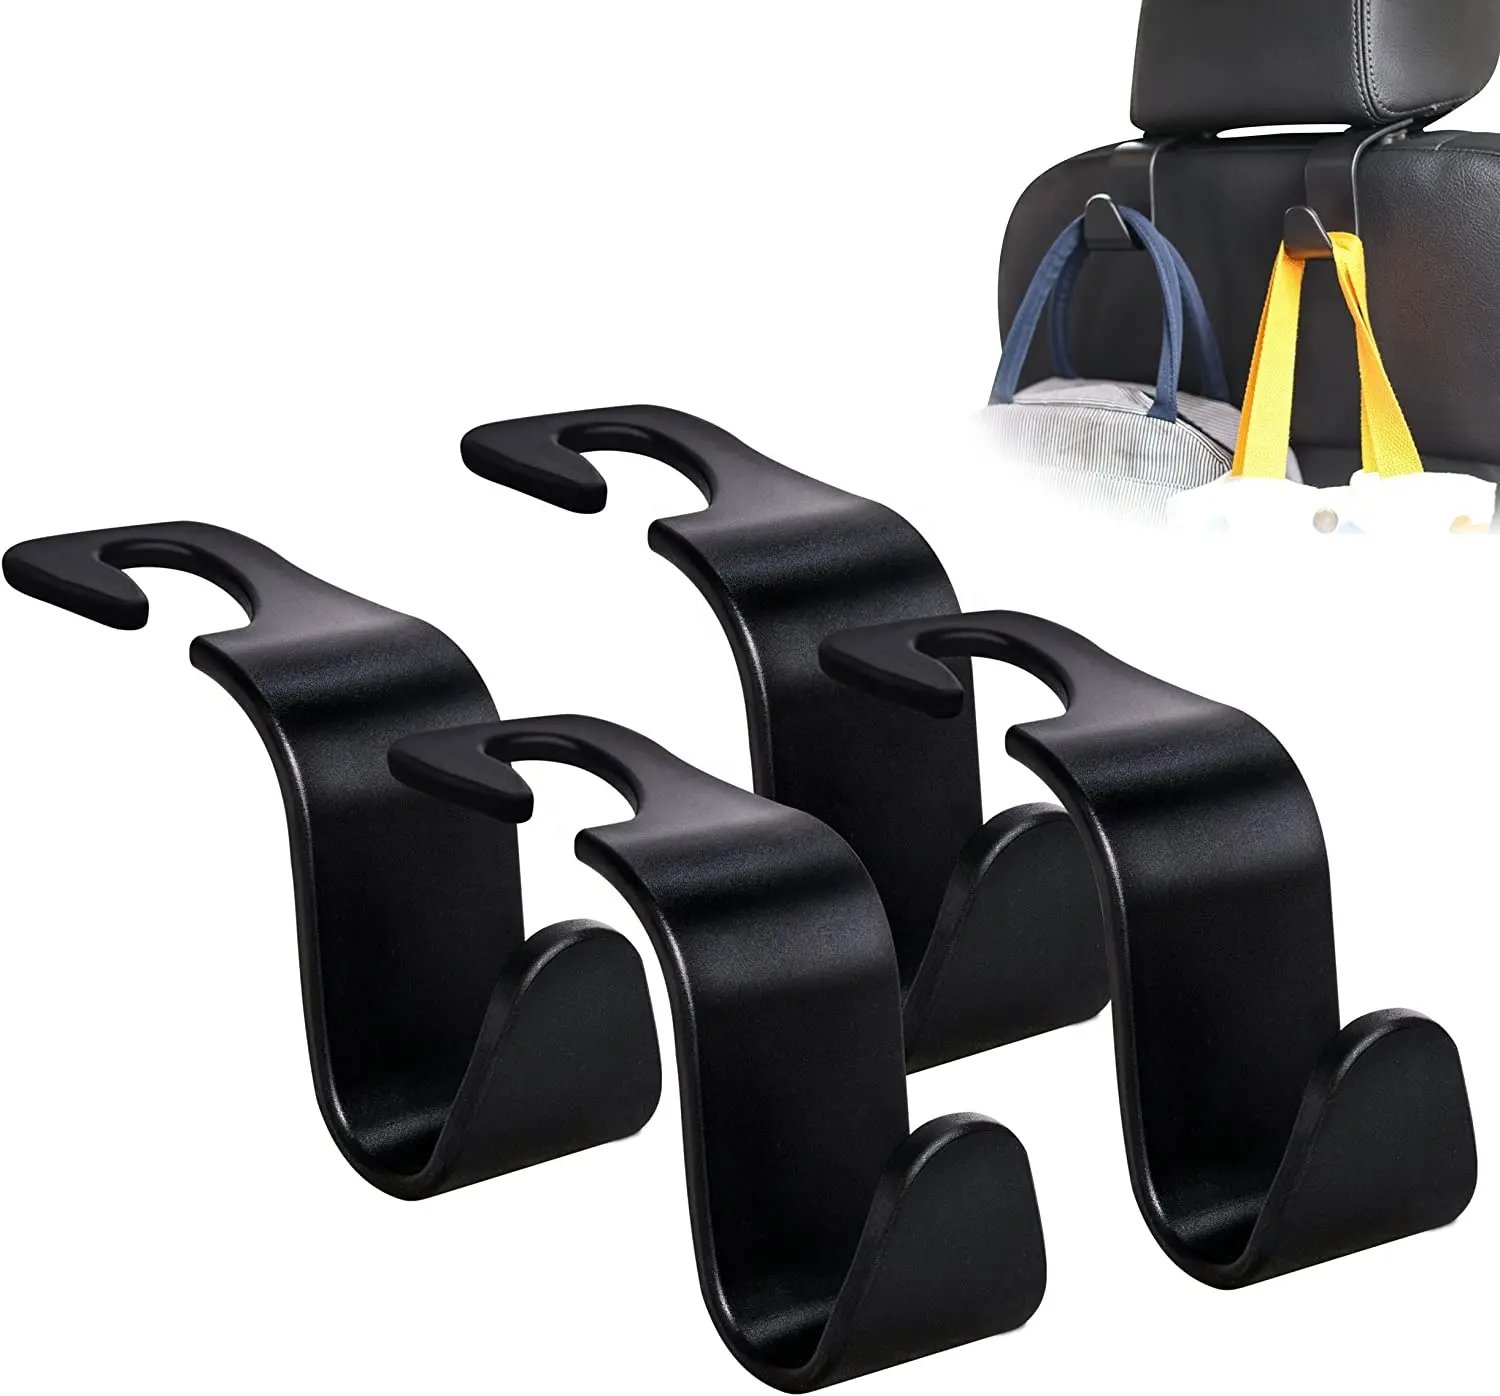 Car Seat Back Hook Universal Portable Car Accessories Interior Hanger Holder Storage for Groceries Bag Handbag